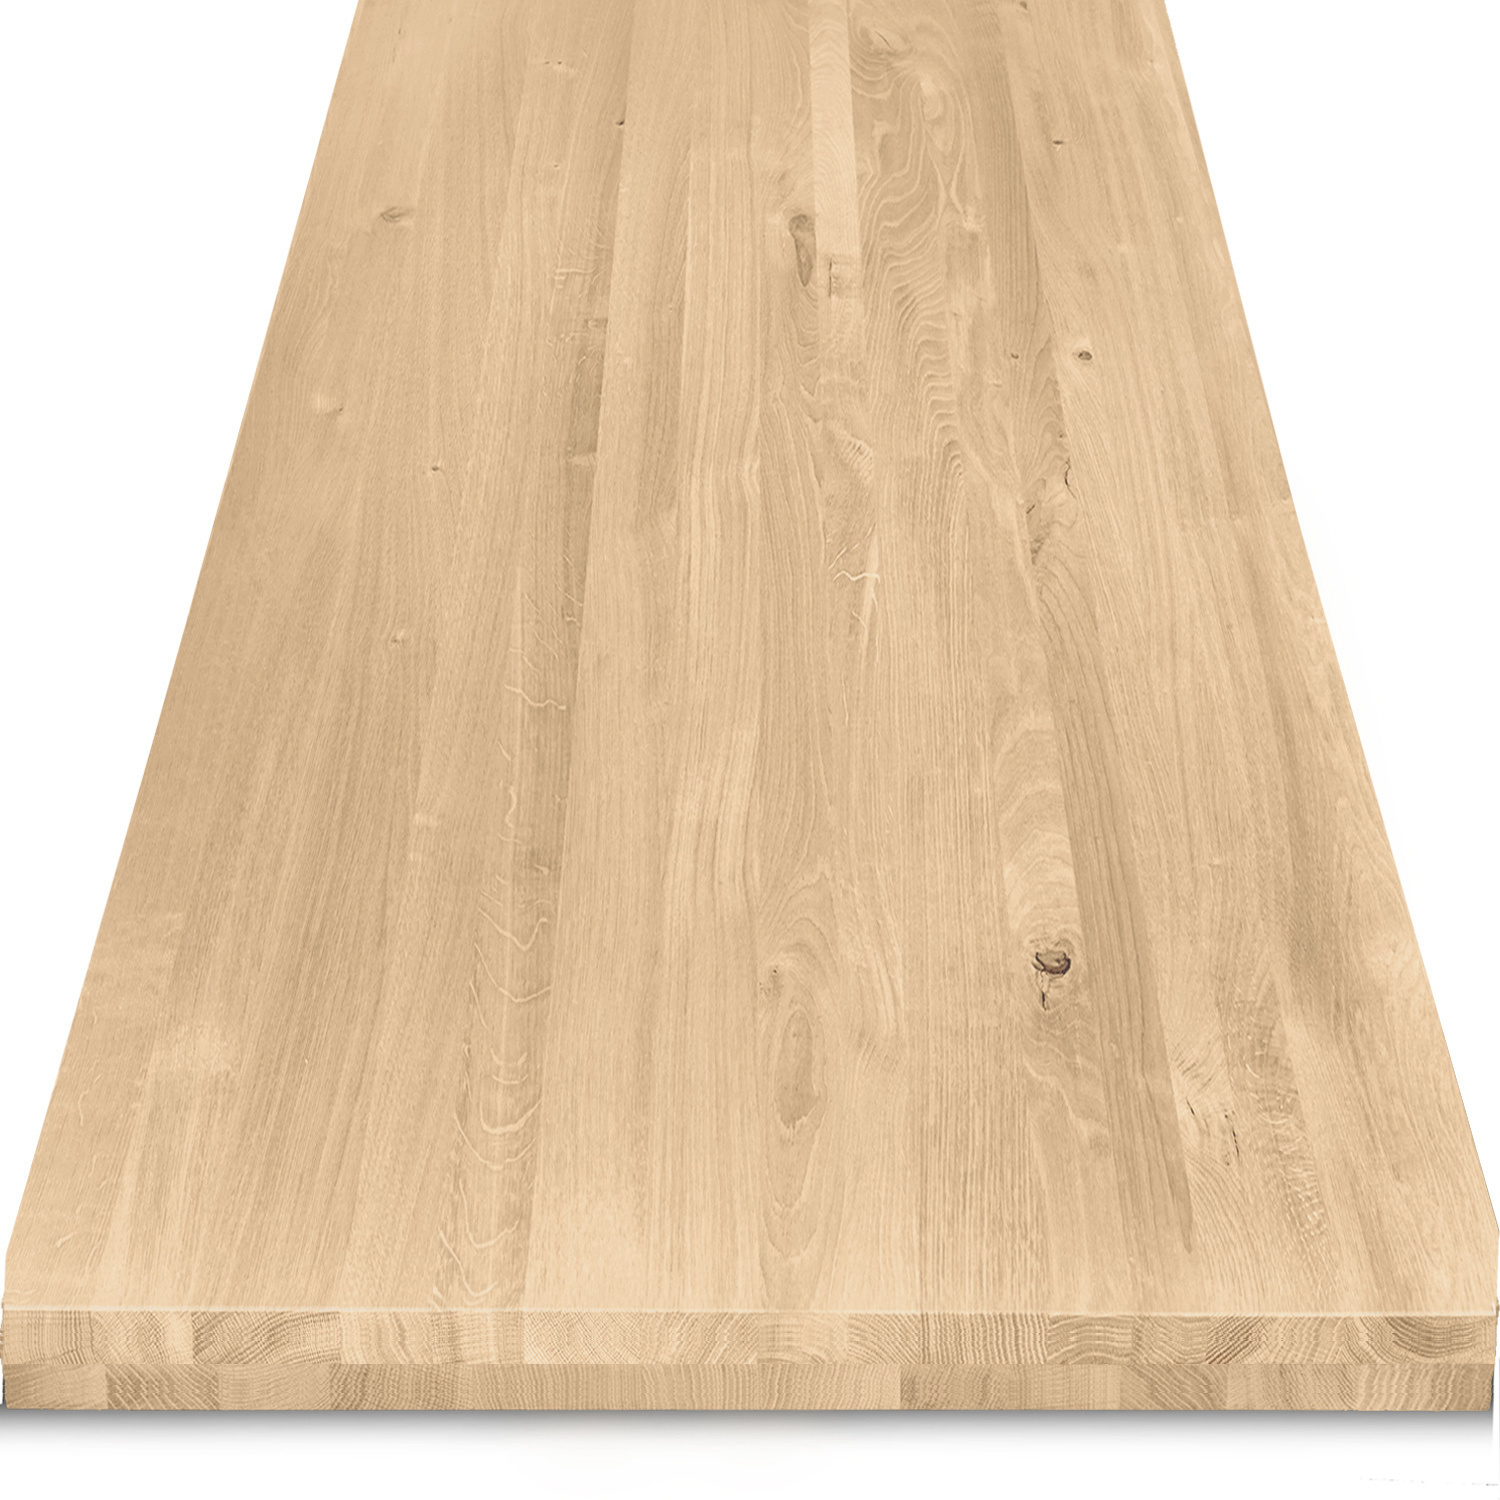  Tischplatte Eiche nach Maß - 6 cm dick (2-lagig) - Eichenholz rustikal - Eiche Tischplatte massiv - verleimt & künstlich getrocknet (HF 8-12%) - 50-120x50-260 cm